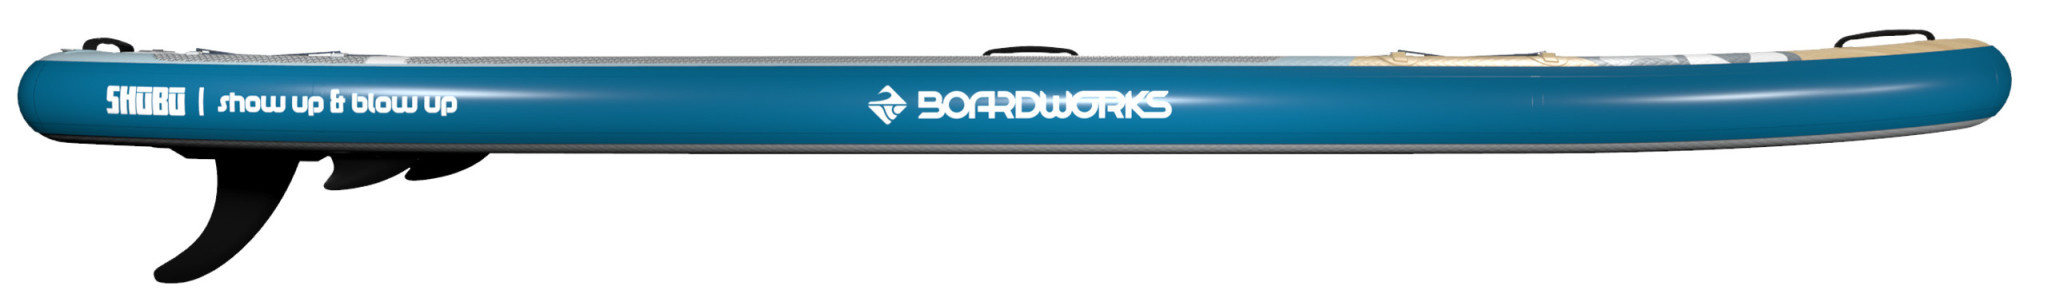 Boardworks  Kraken 11' Inflatable SUP (Stand Up Paddleboard) - Blue